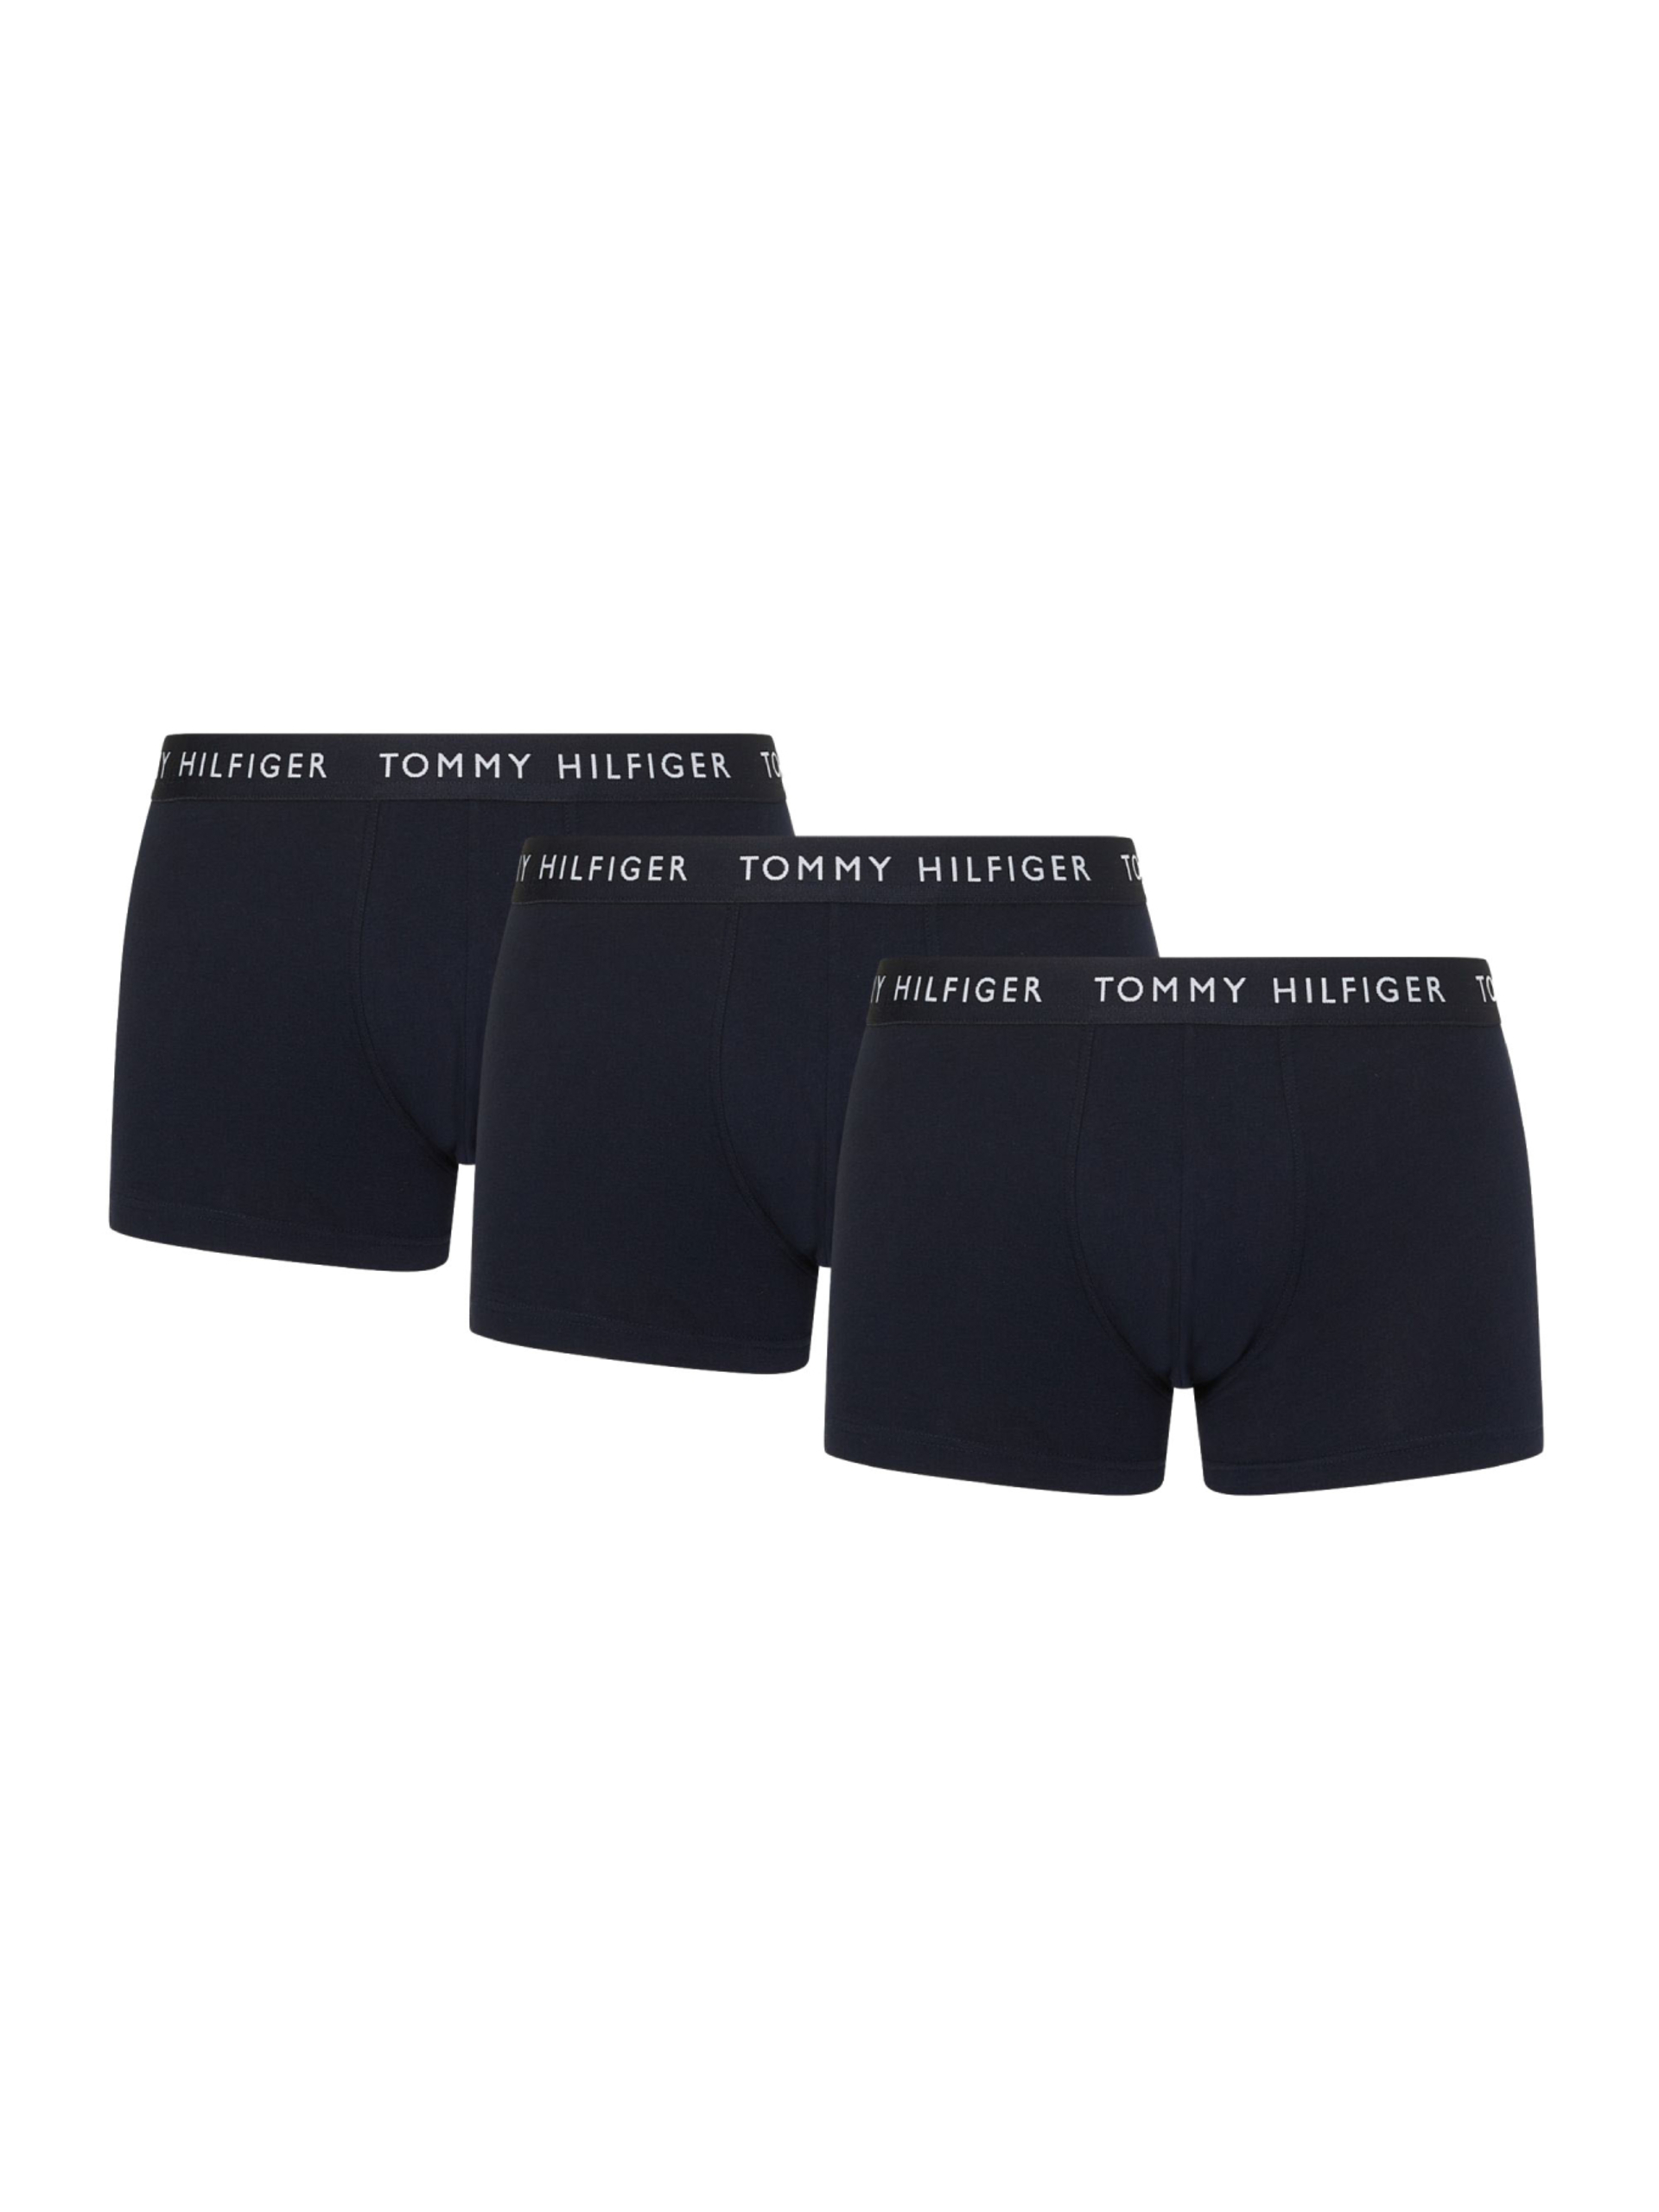 Tommy Hilfiger pánské tmavě modré boxerky 3 pack - XL (0SF)